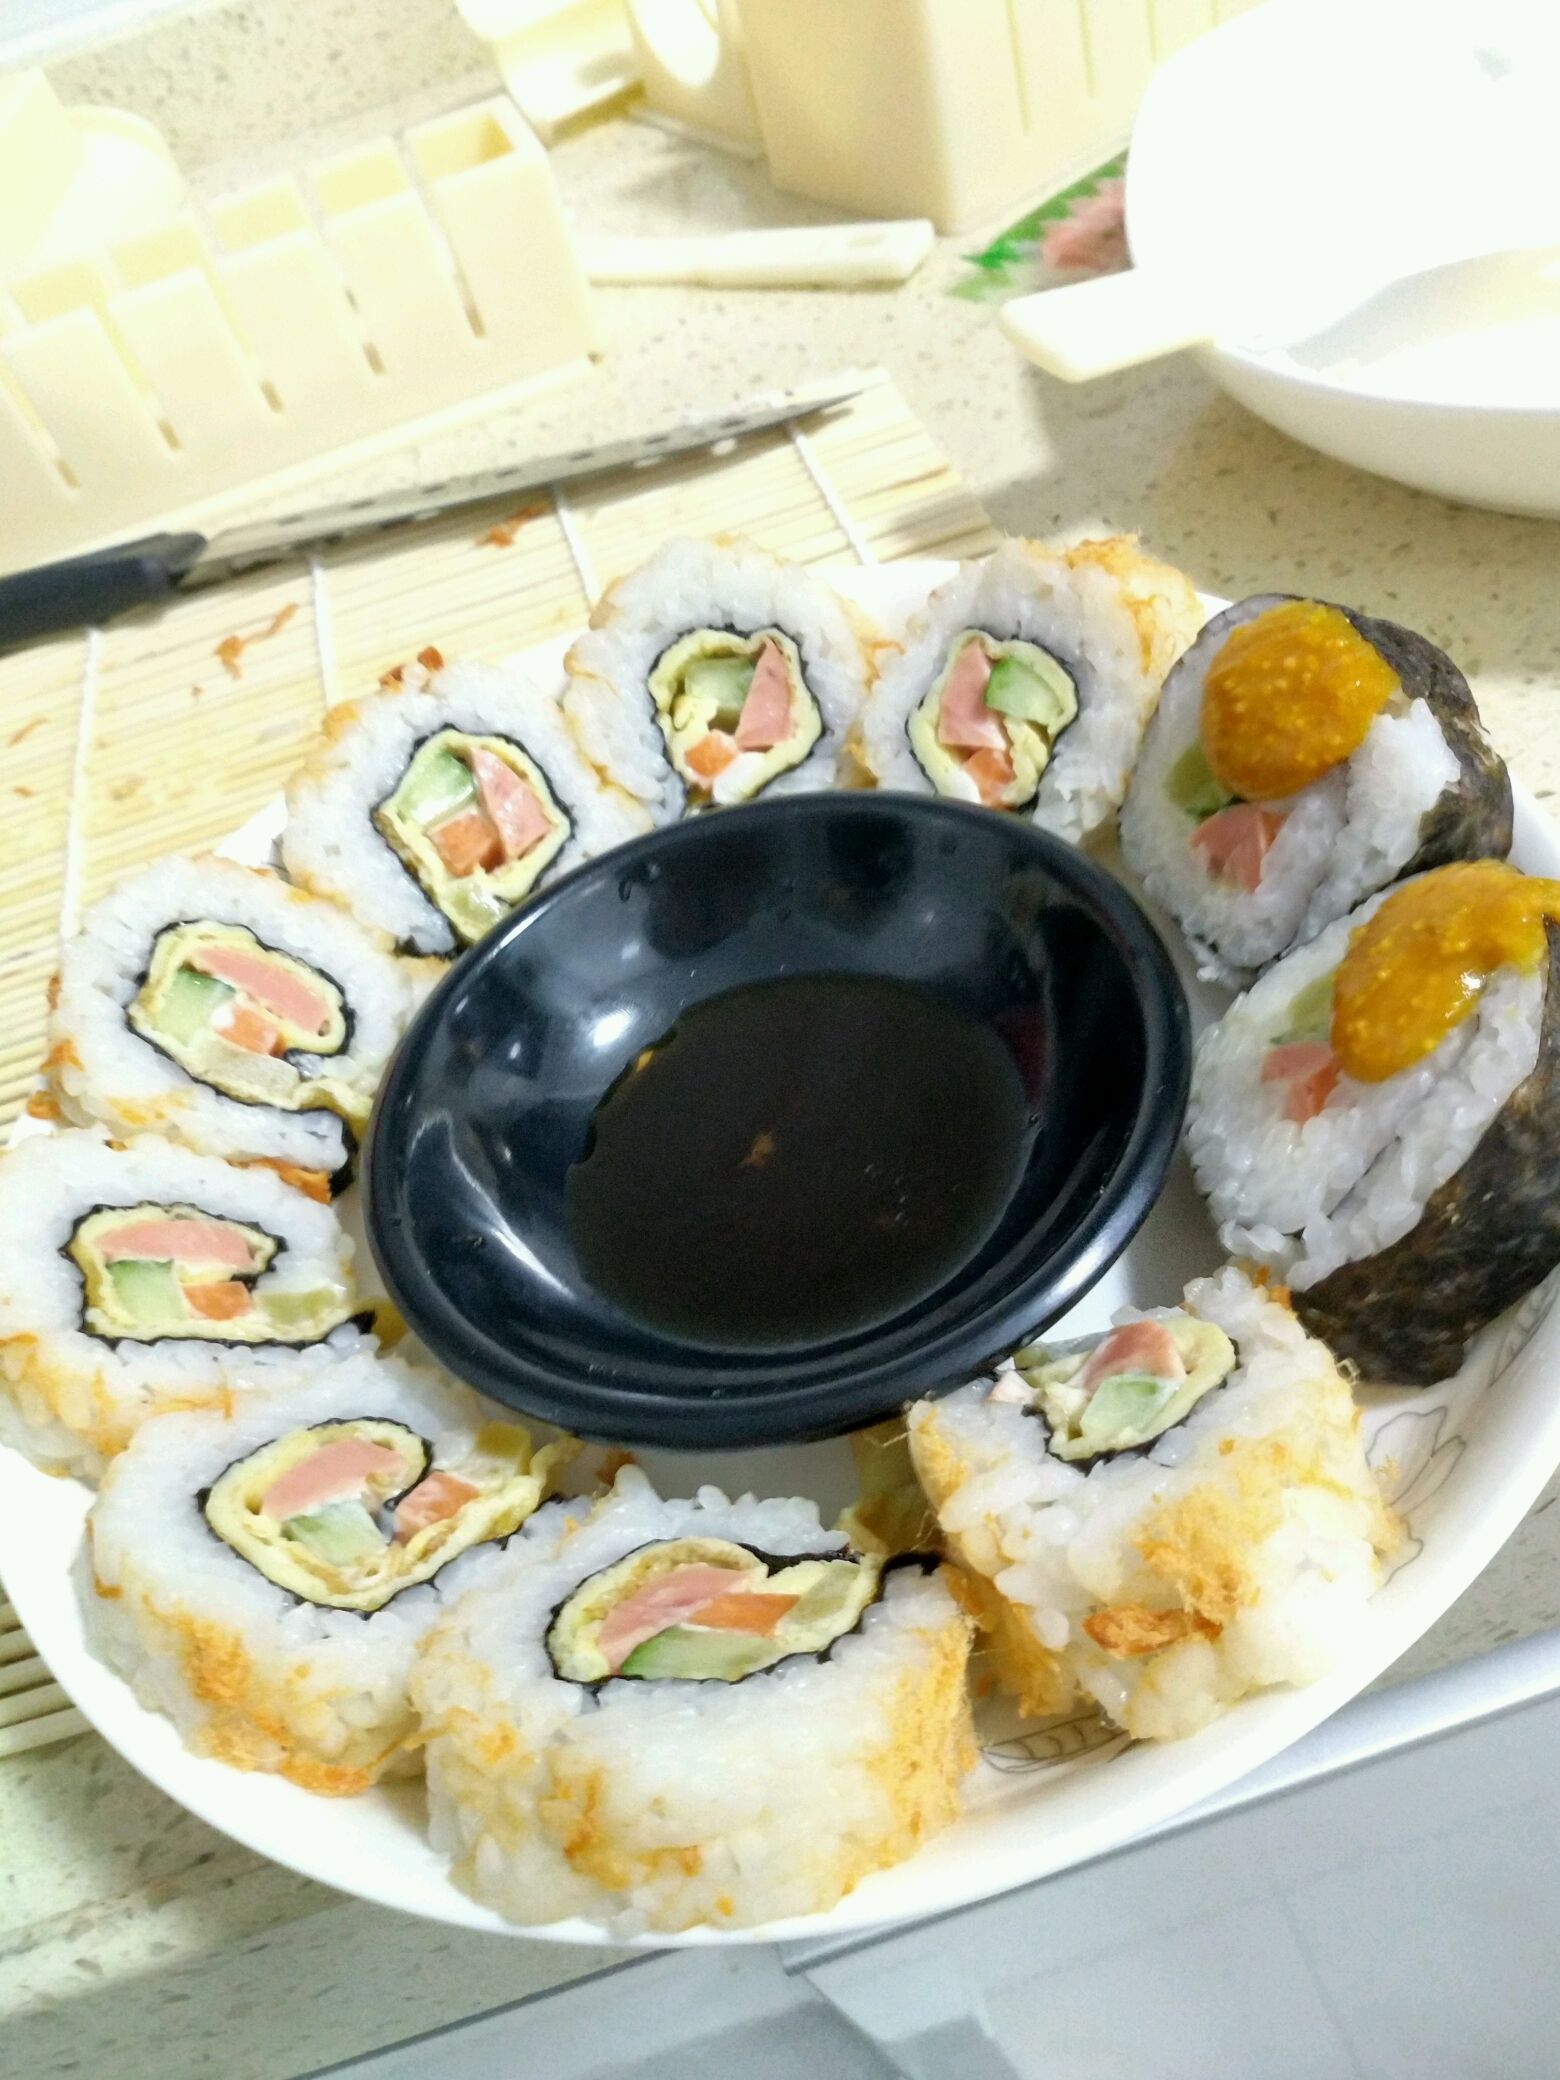 在绿色叶子设置的寿司 库存图片. 图片 包括有 水稻, 原始, 鳗鱼, 筷子, 烤肉, 可口, 准备, 烹调 - 45431381